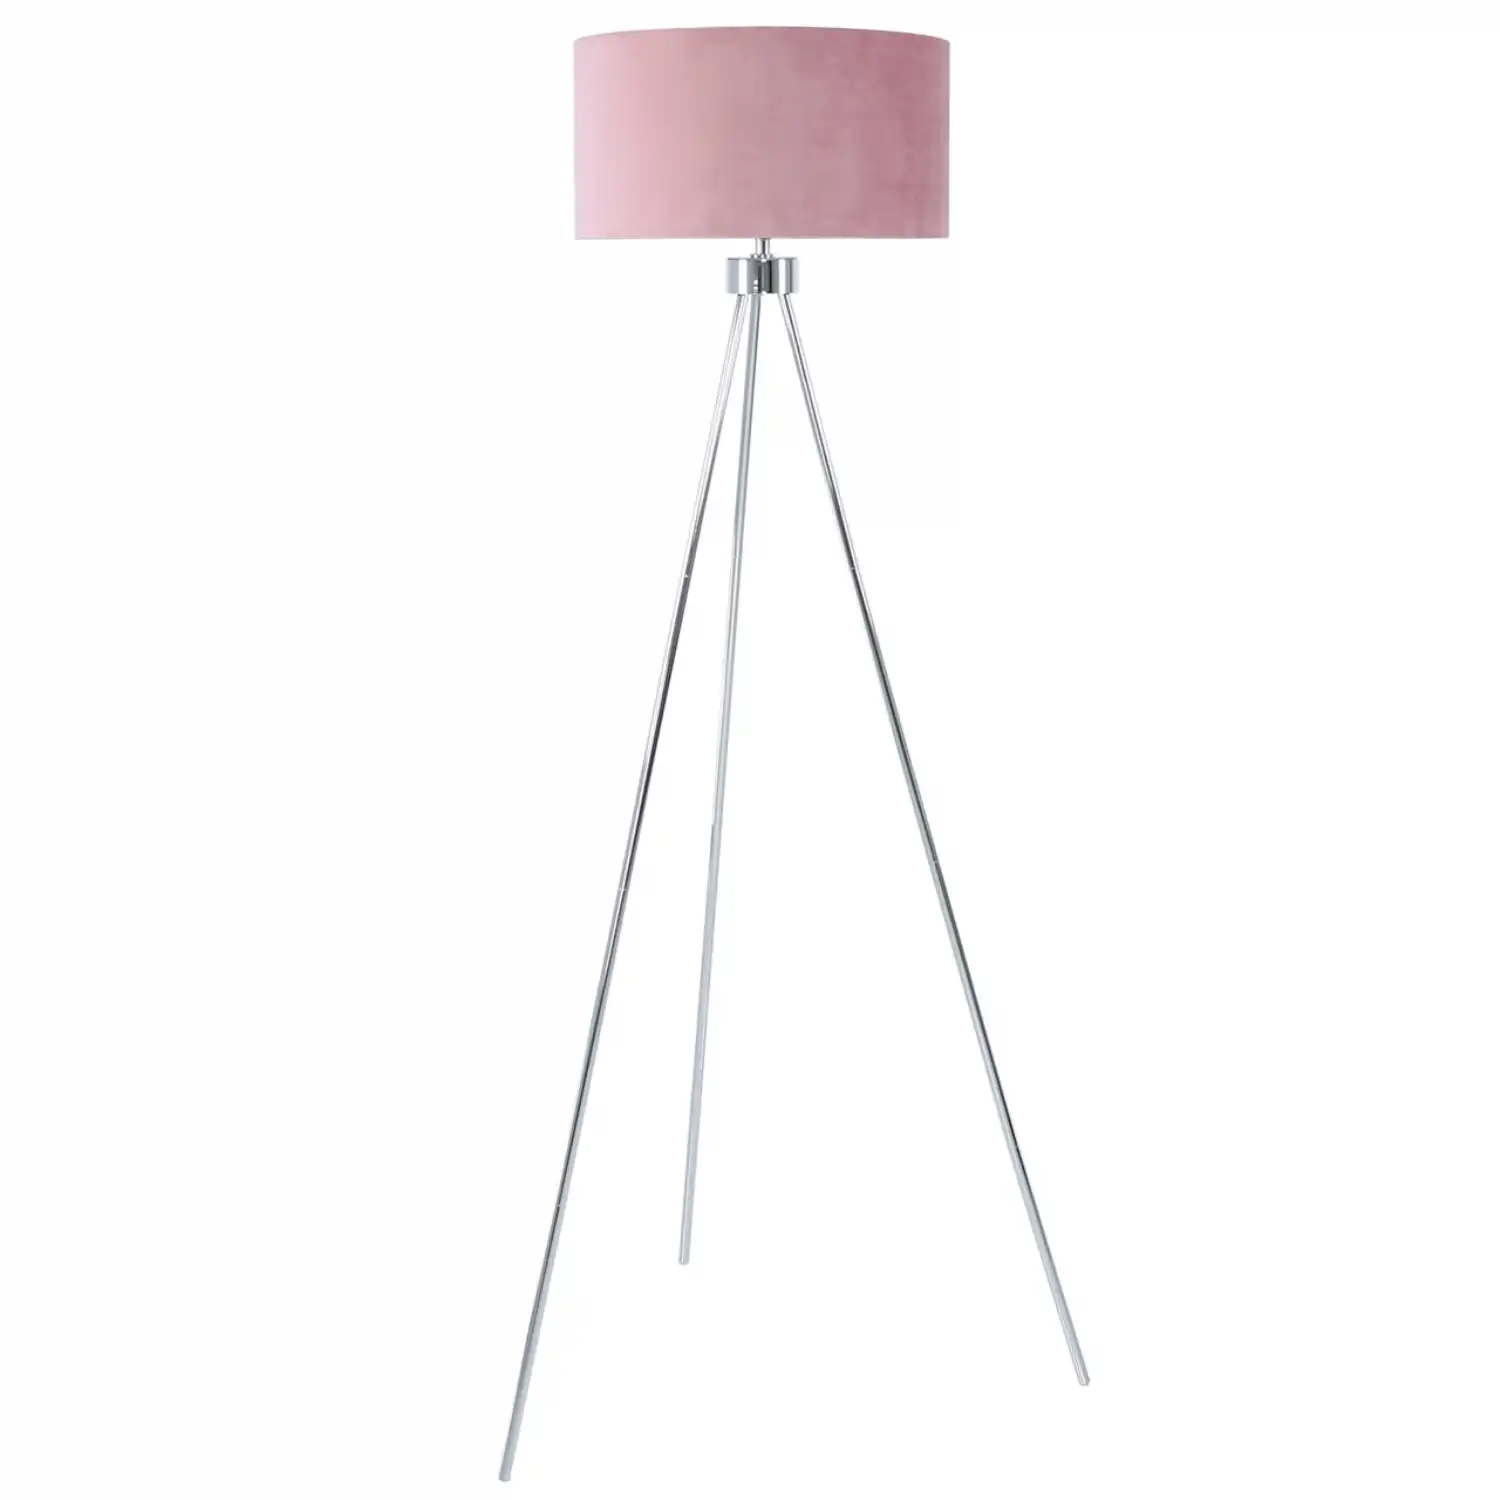 Large 159cm Chrome Tripod Floor Lamp Pink Velvet Shade